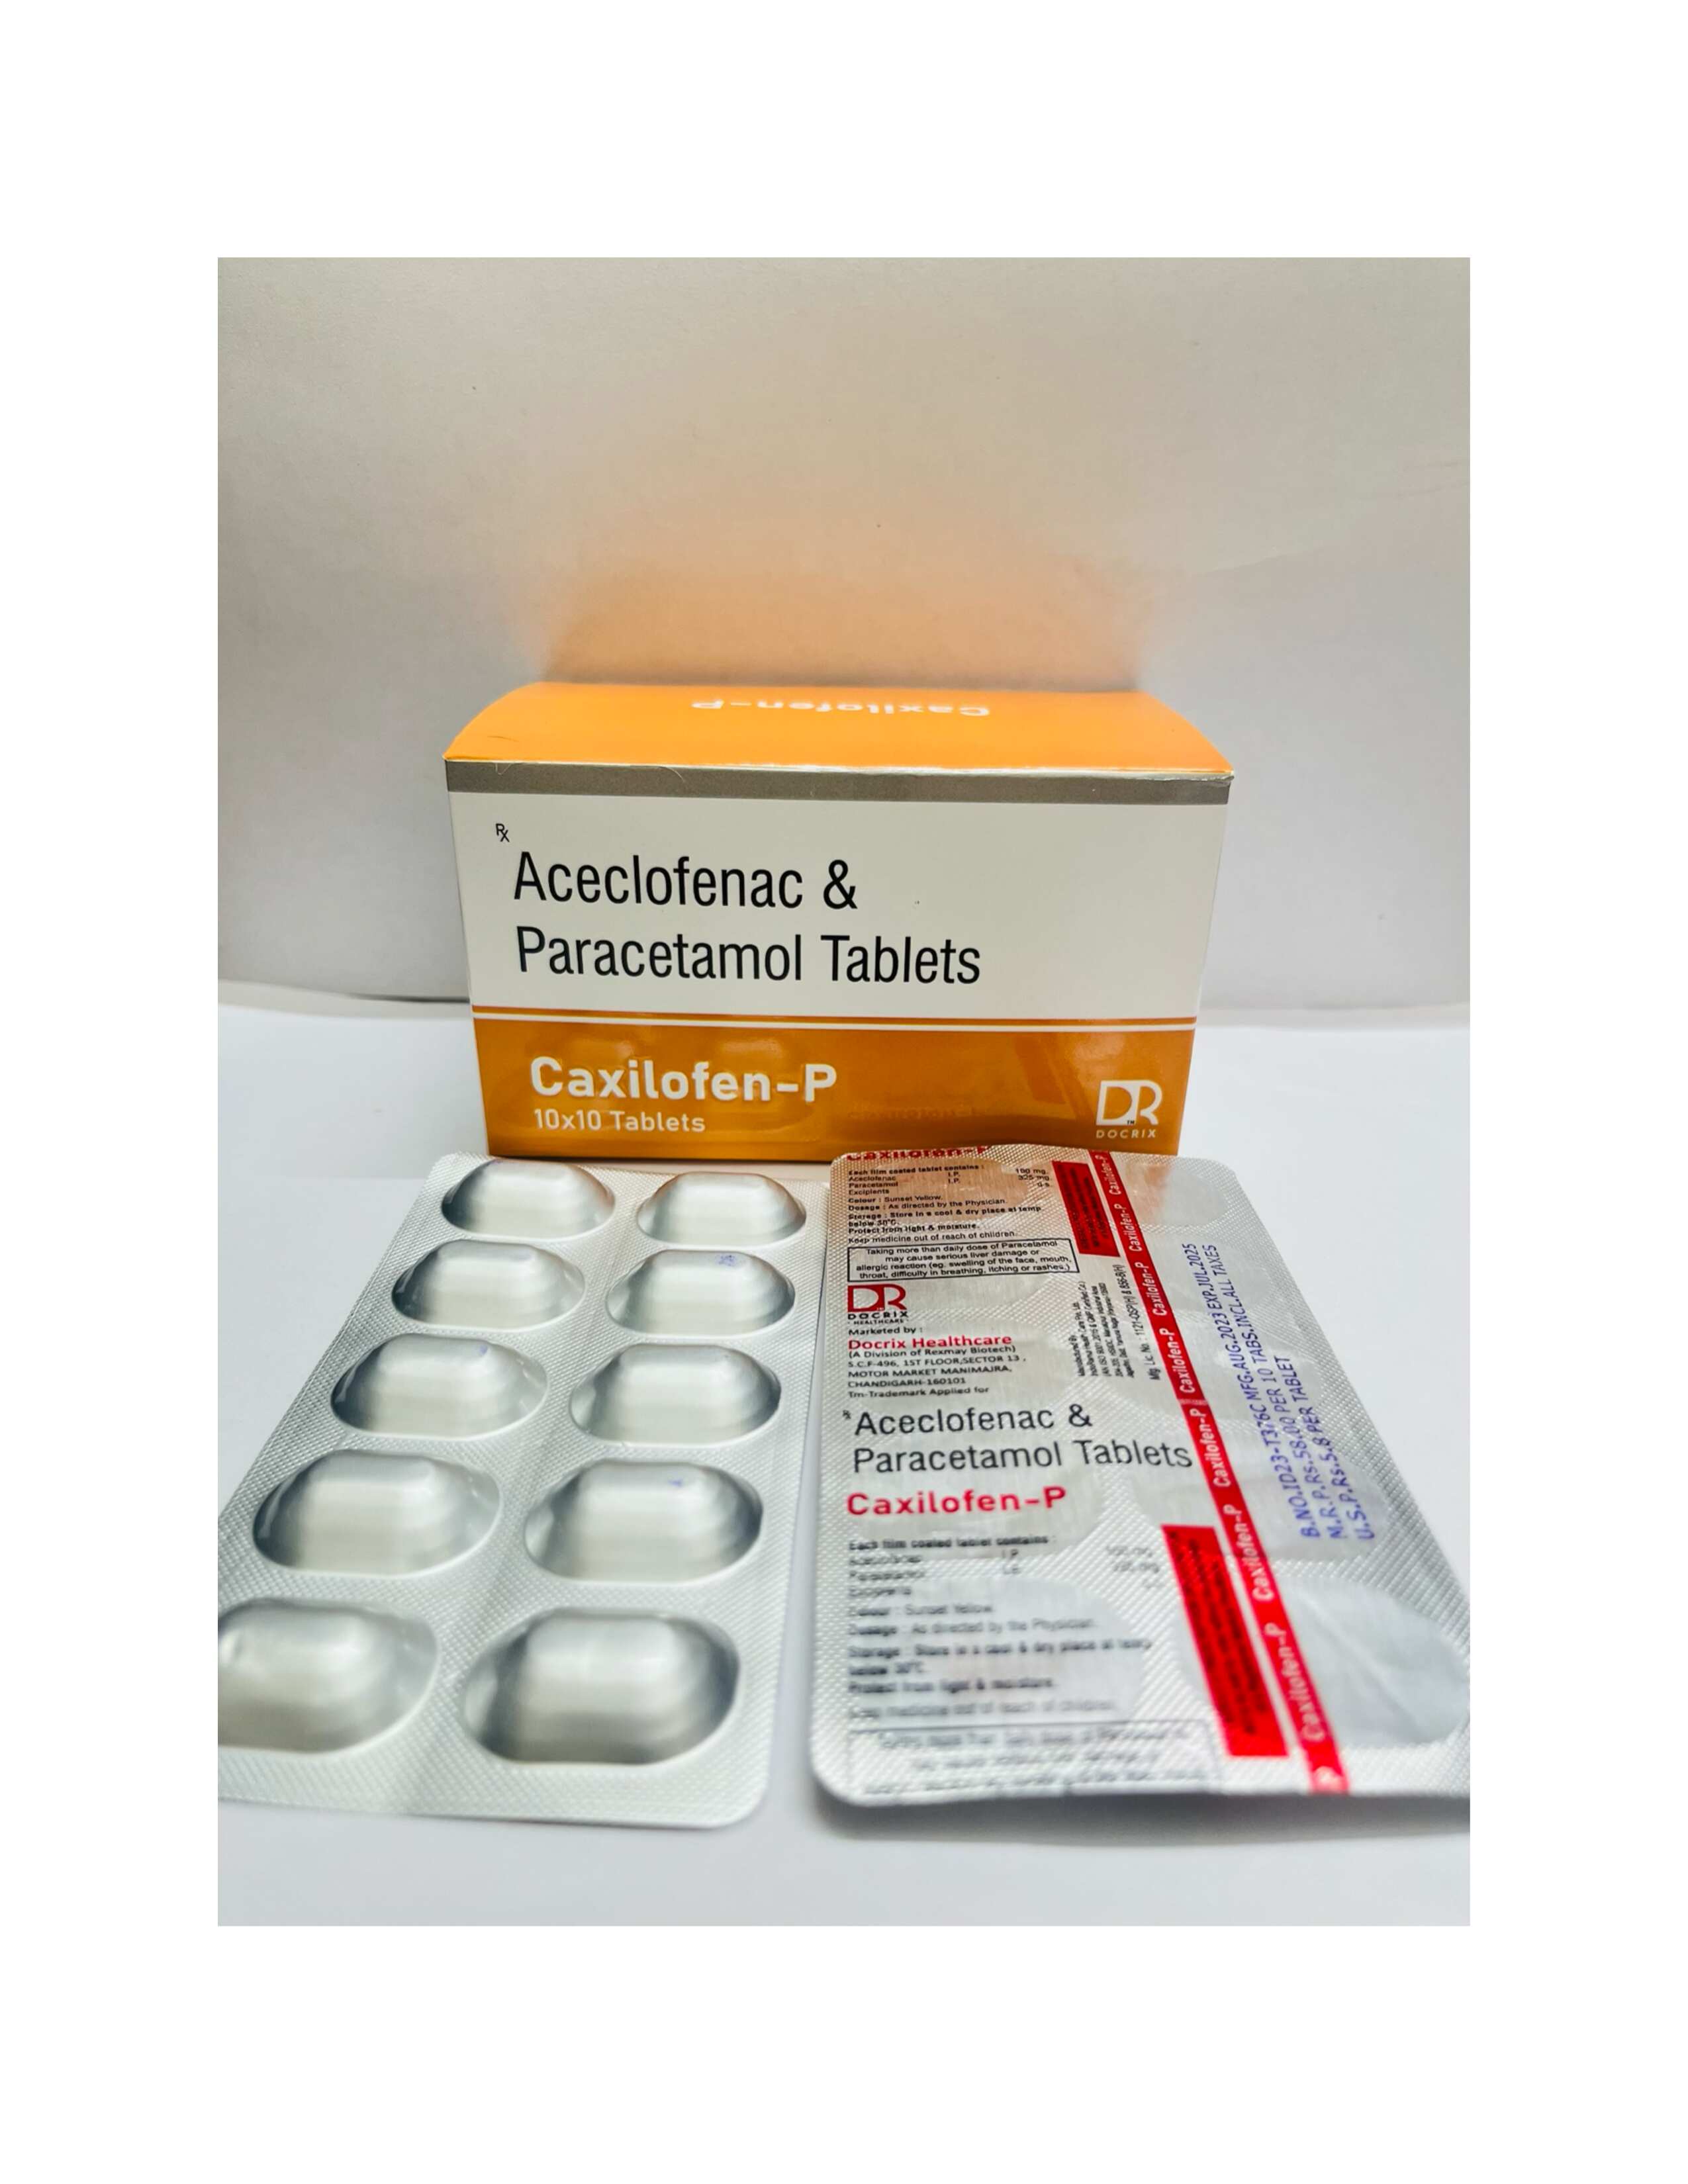 Product Name: Caxilofen p, Compositions of Caxilofen p are Aceclofenac & Paracetamol Tablets - Docrix Healthcare